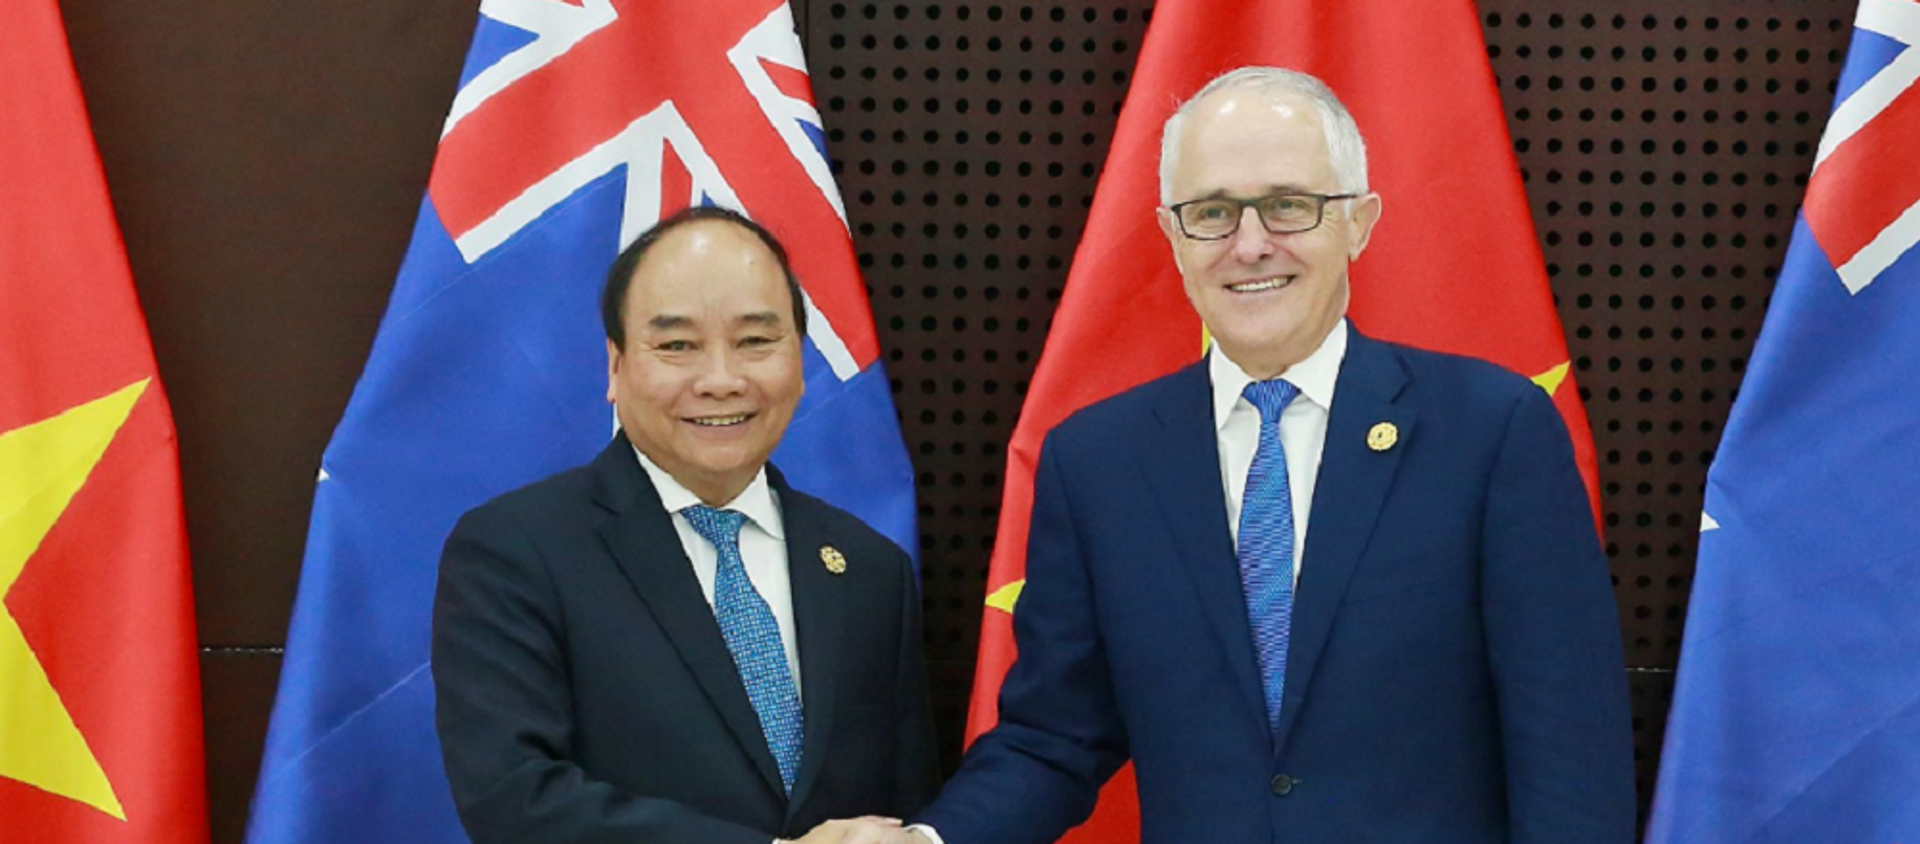 Thủ tướng Nguyễn Xuân Phúc và Thủ tướng Australia Malcolm Turnbull - Sputnik Việt Nam, 1920, 14.03.2018